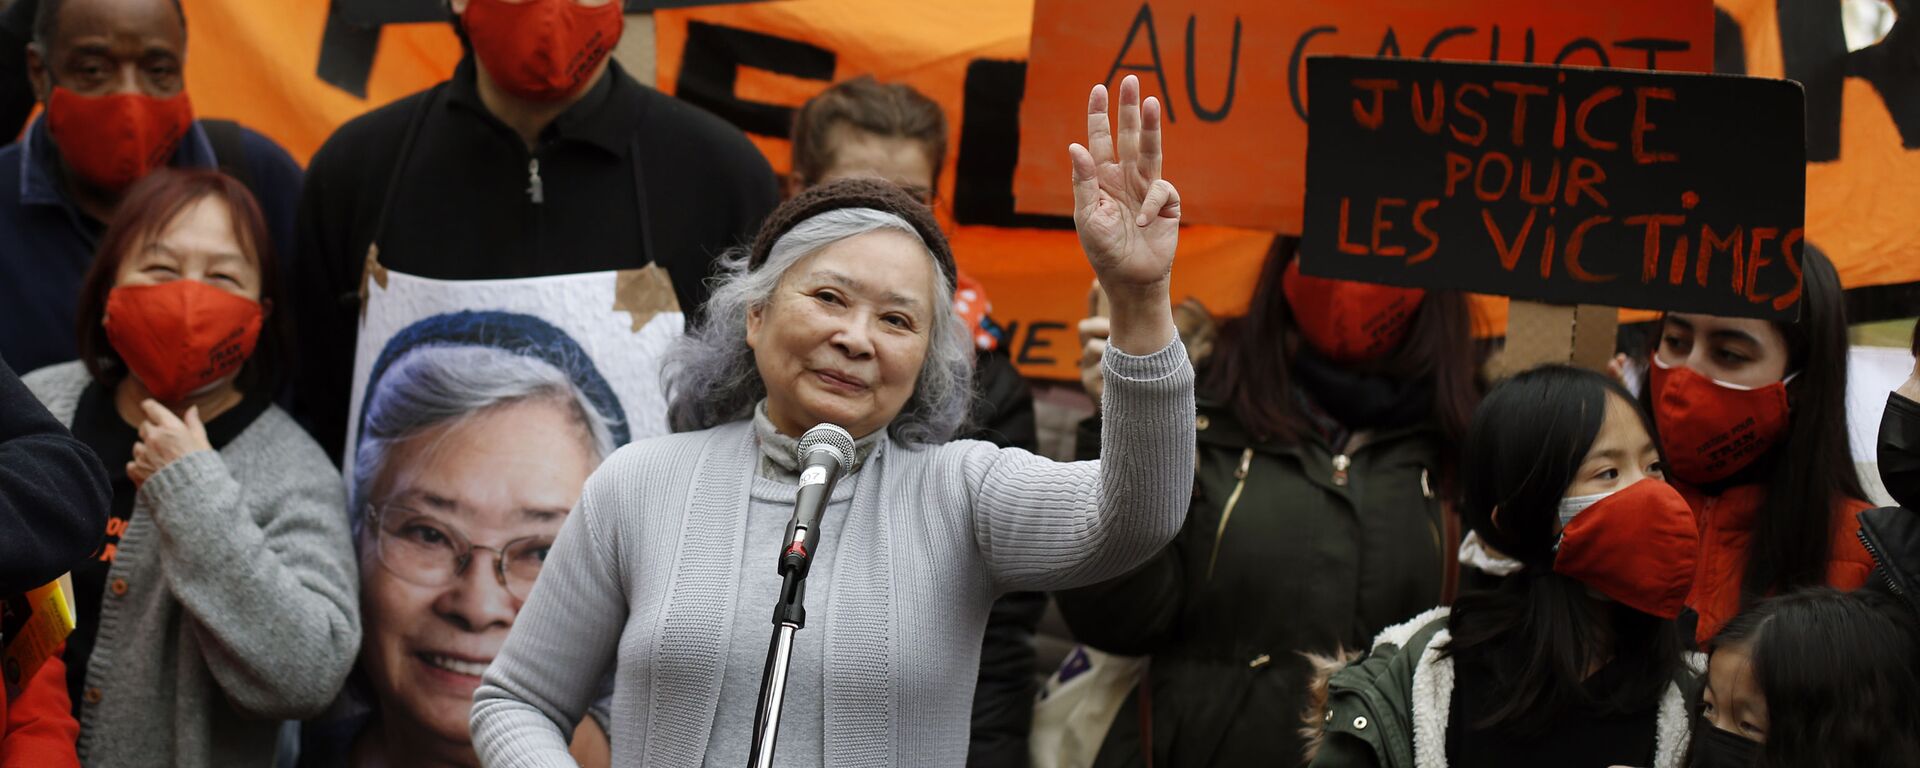 Bà Trần Tố Nga tại cuộc mít tinh ở Paris bày tỏ sự ủng hộ các nạn nhân của chất độc da cam trong chiến tranh Việt Nam. - Sputnik Việt Nam, 1920, 10.05.2021